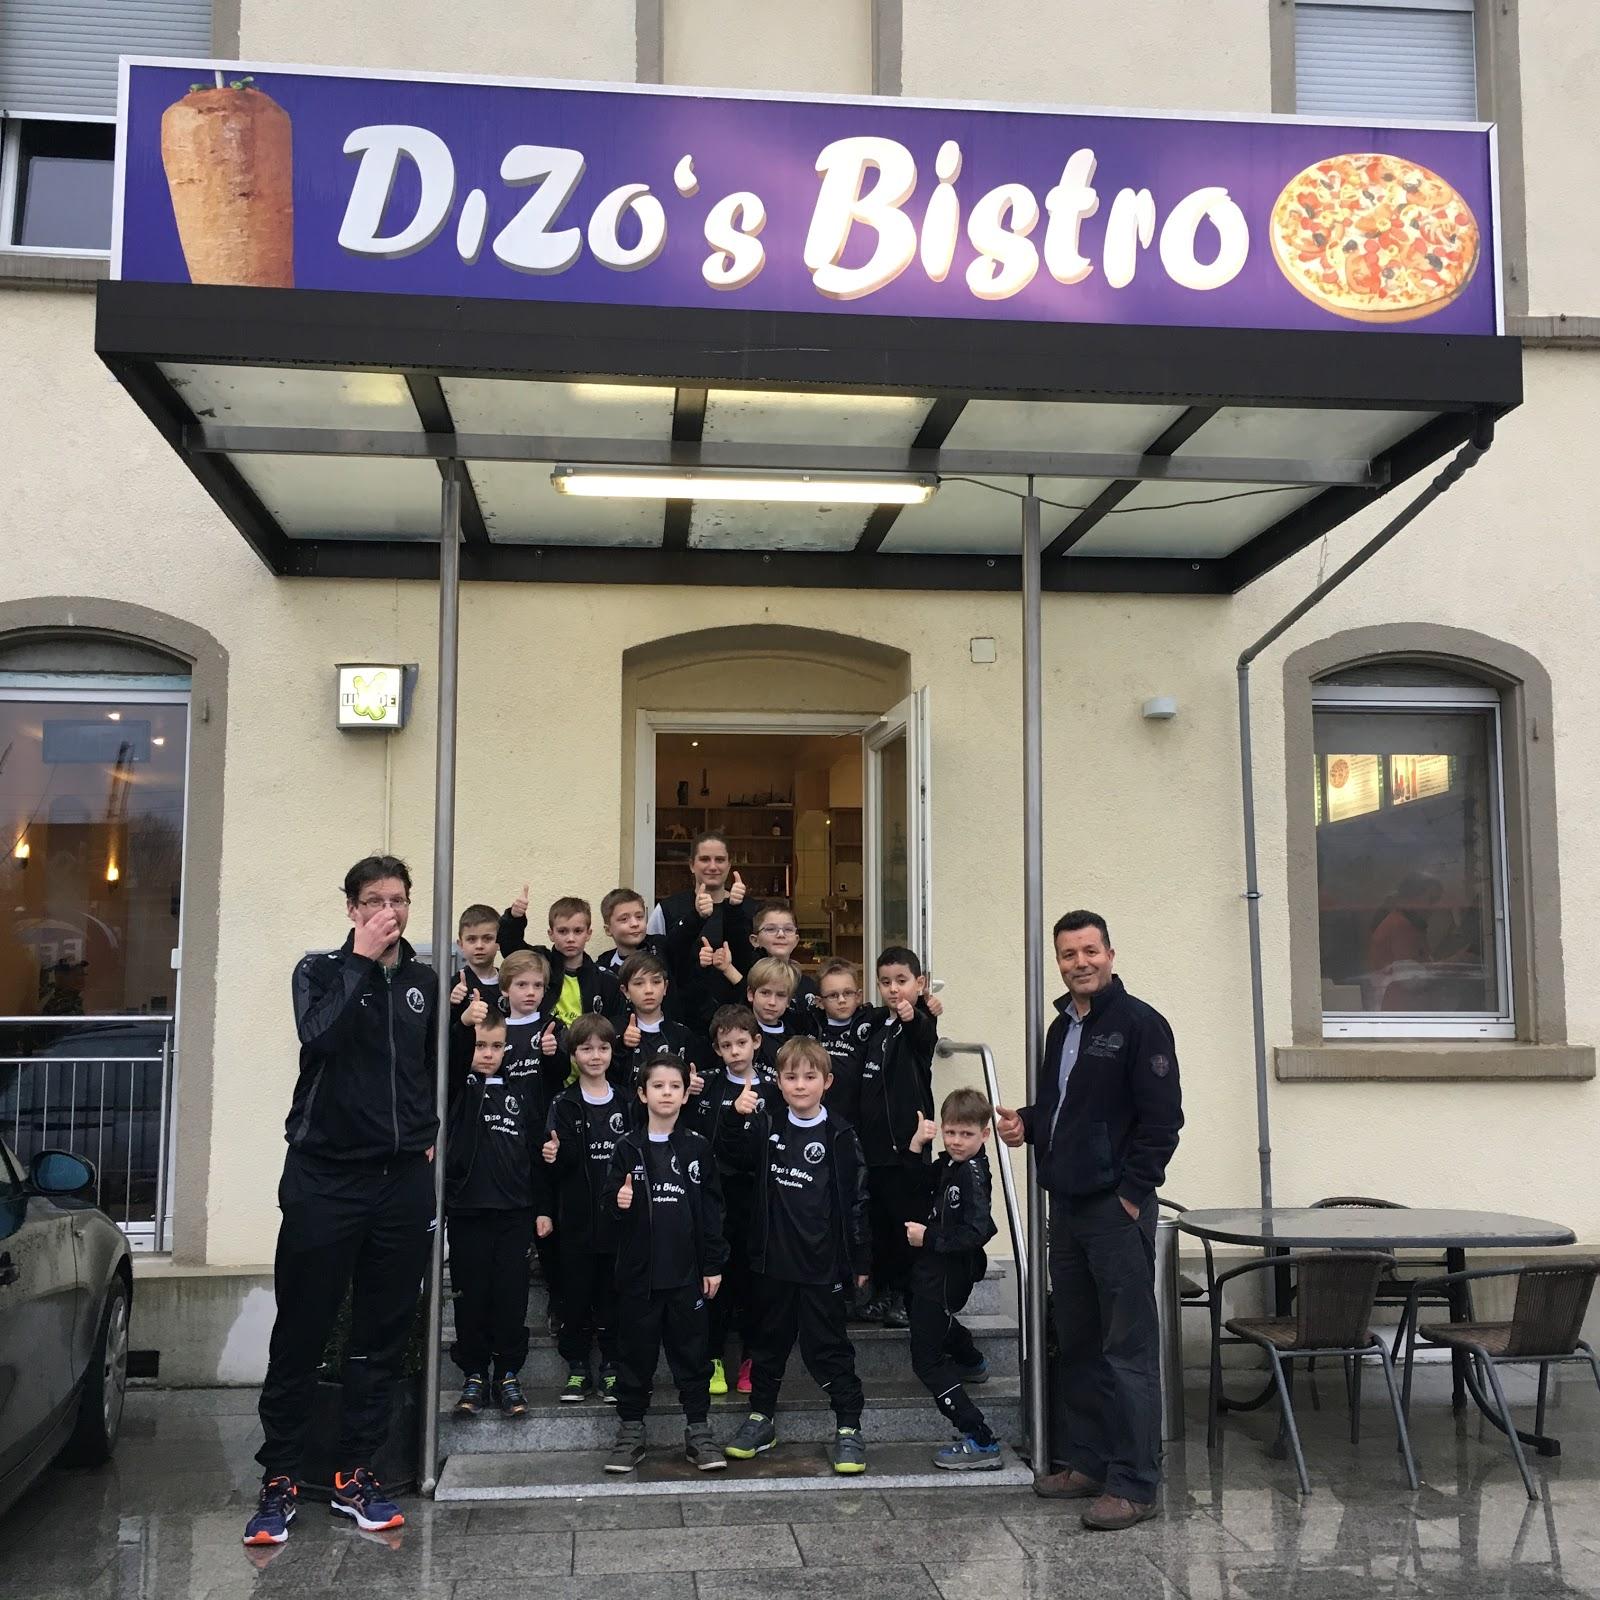 Restaurant "Dizo